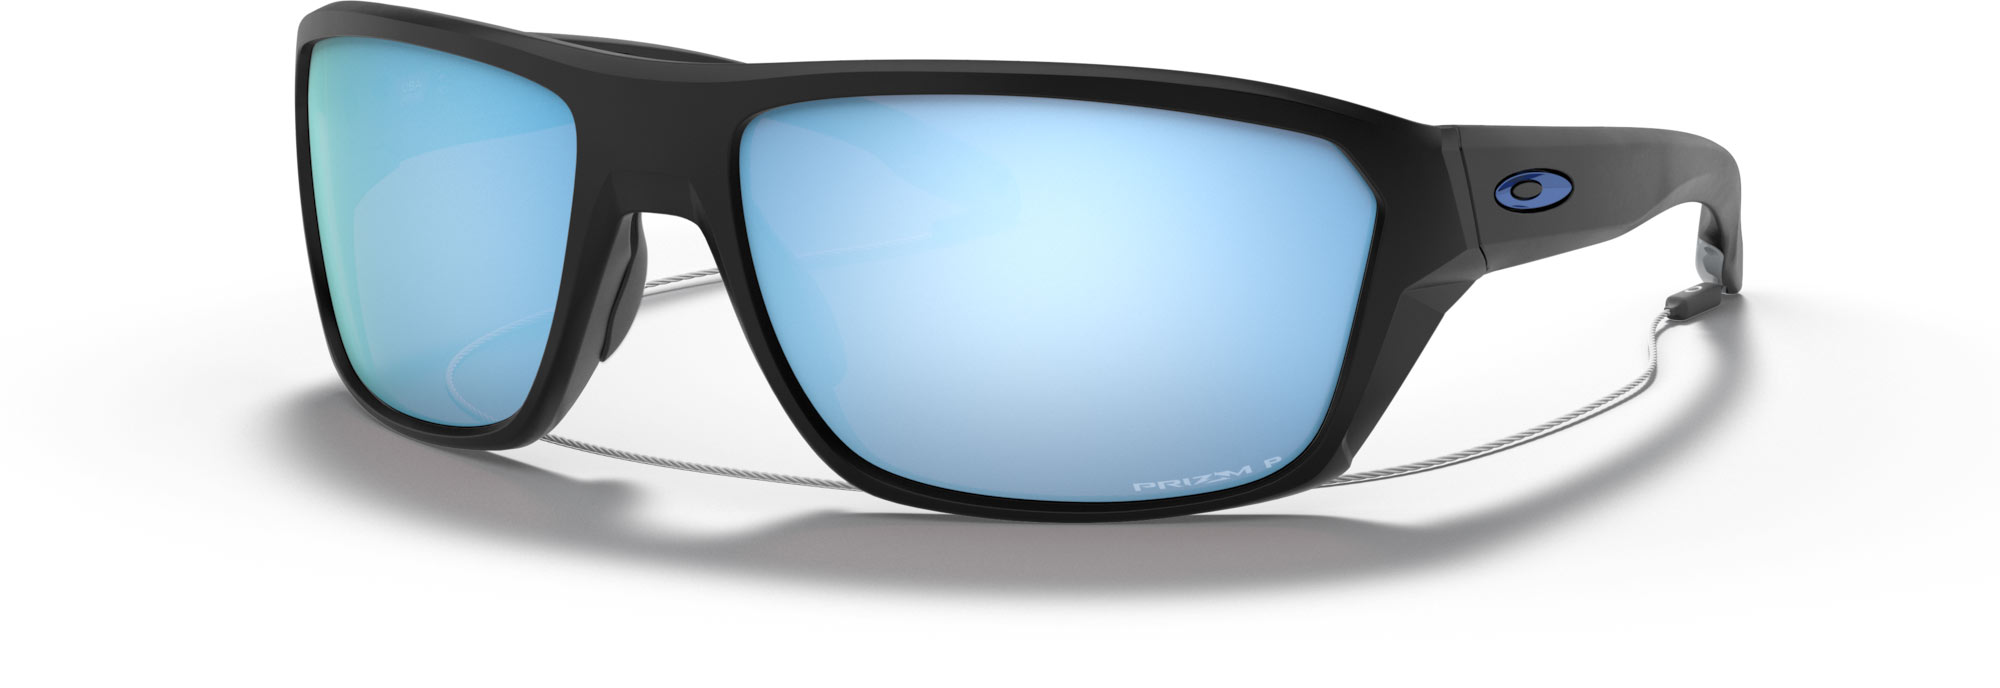 Oakley Split Shot Sunglasses 2021 | Mount Everest